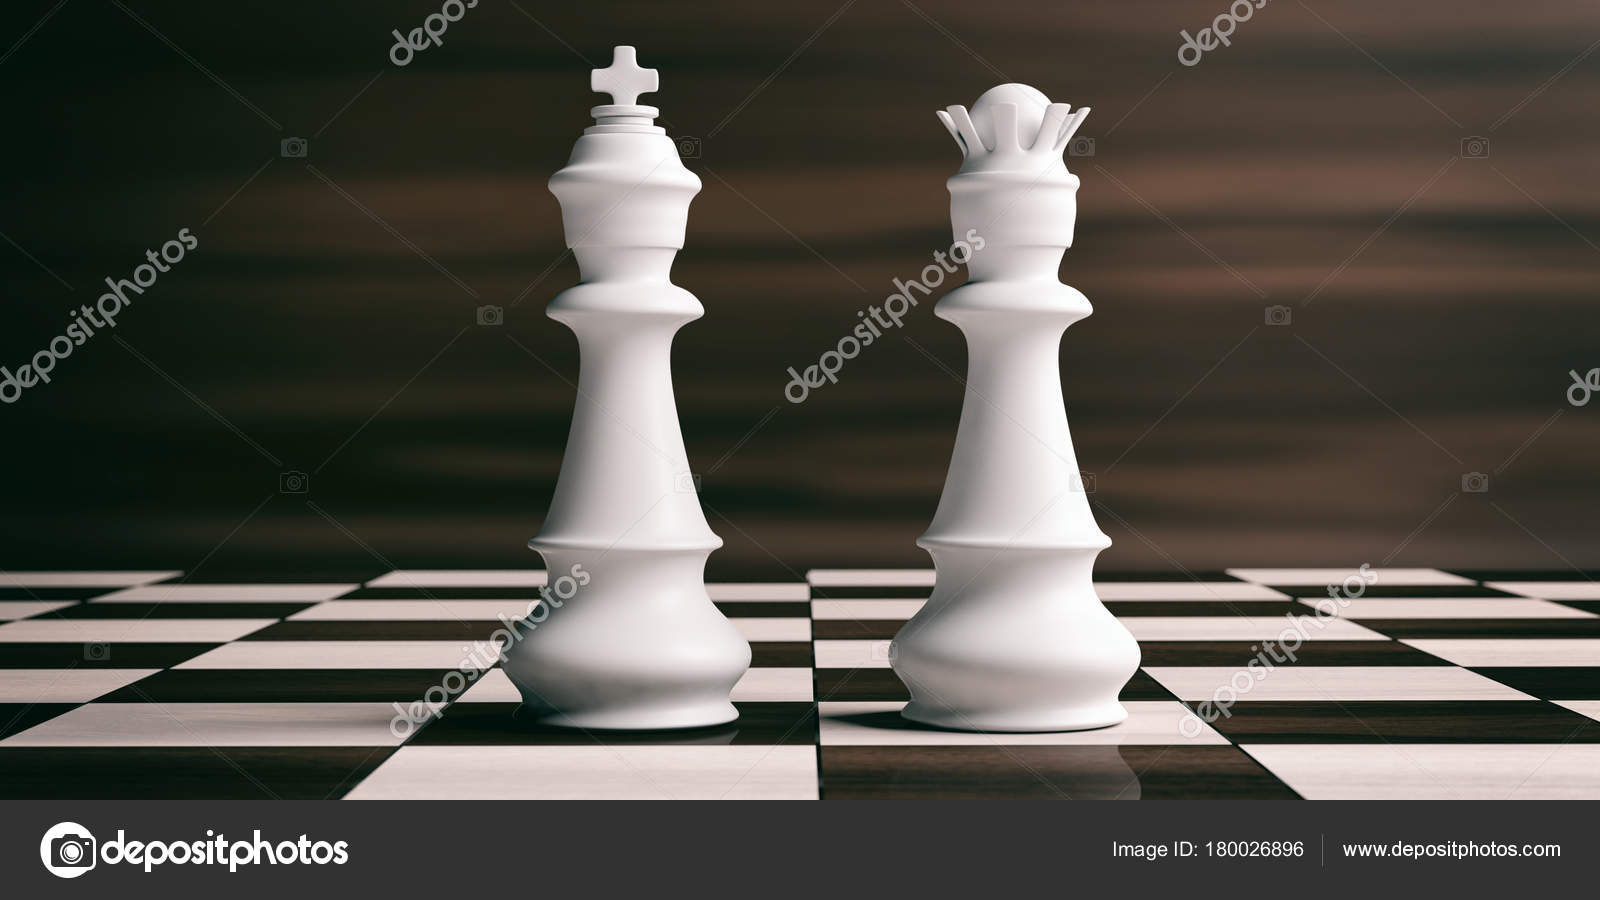 Foto de Confronto Macismo O Rei Branco Mata Rainha Branca e mais fotos de  stock de Rainha - Peça de xadrez - iStock